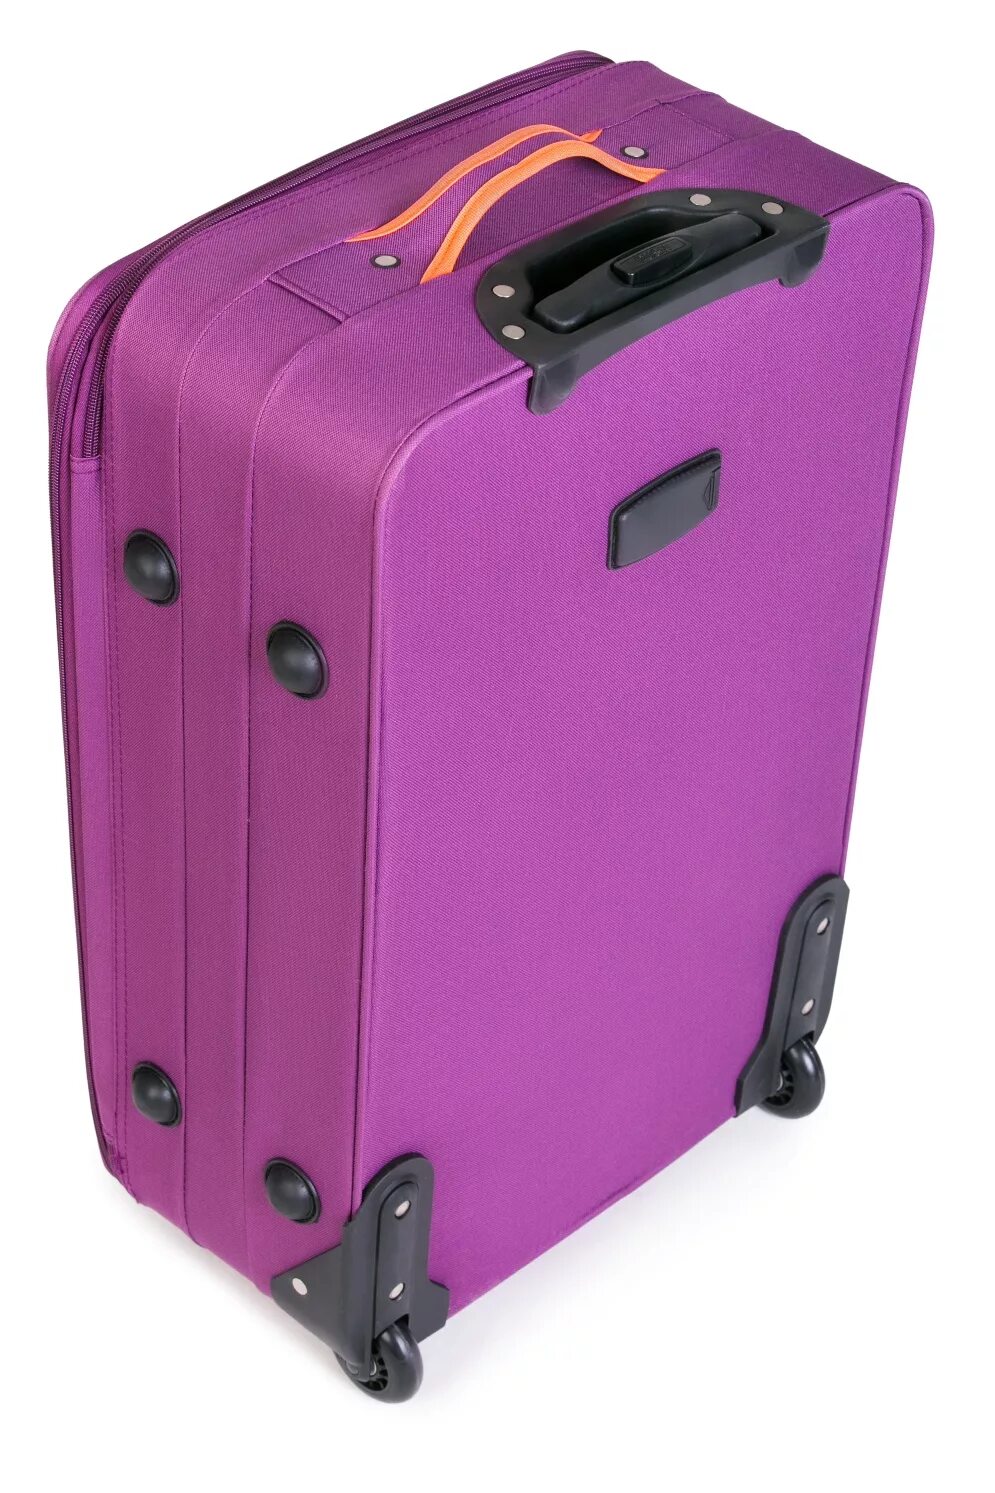 Купить чемодан на колесиках в интернете. Чемодан "Baudet", цвет: фиолетовый. Чемодан Baudet фиолетовый 70л. Чемодан 55х40х25 вайлдберриз. Чемодан dielleb210 s.